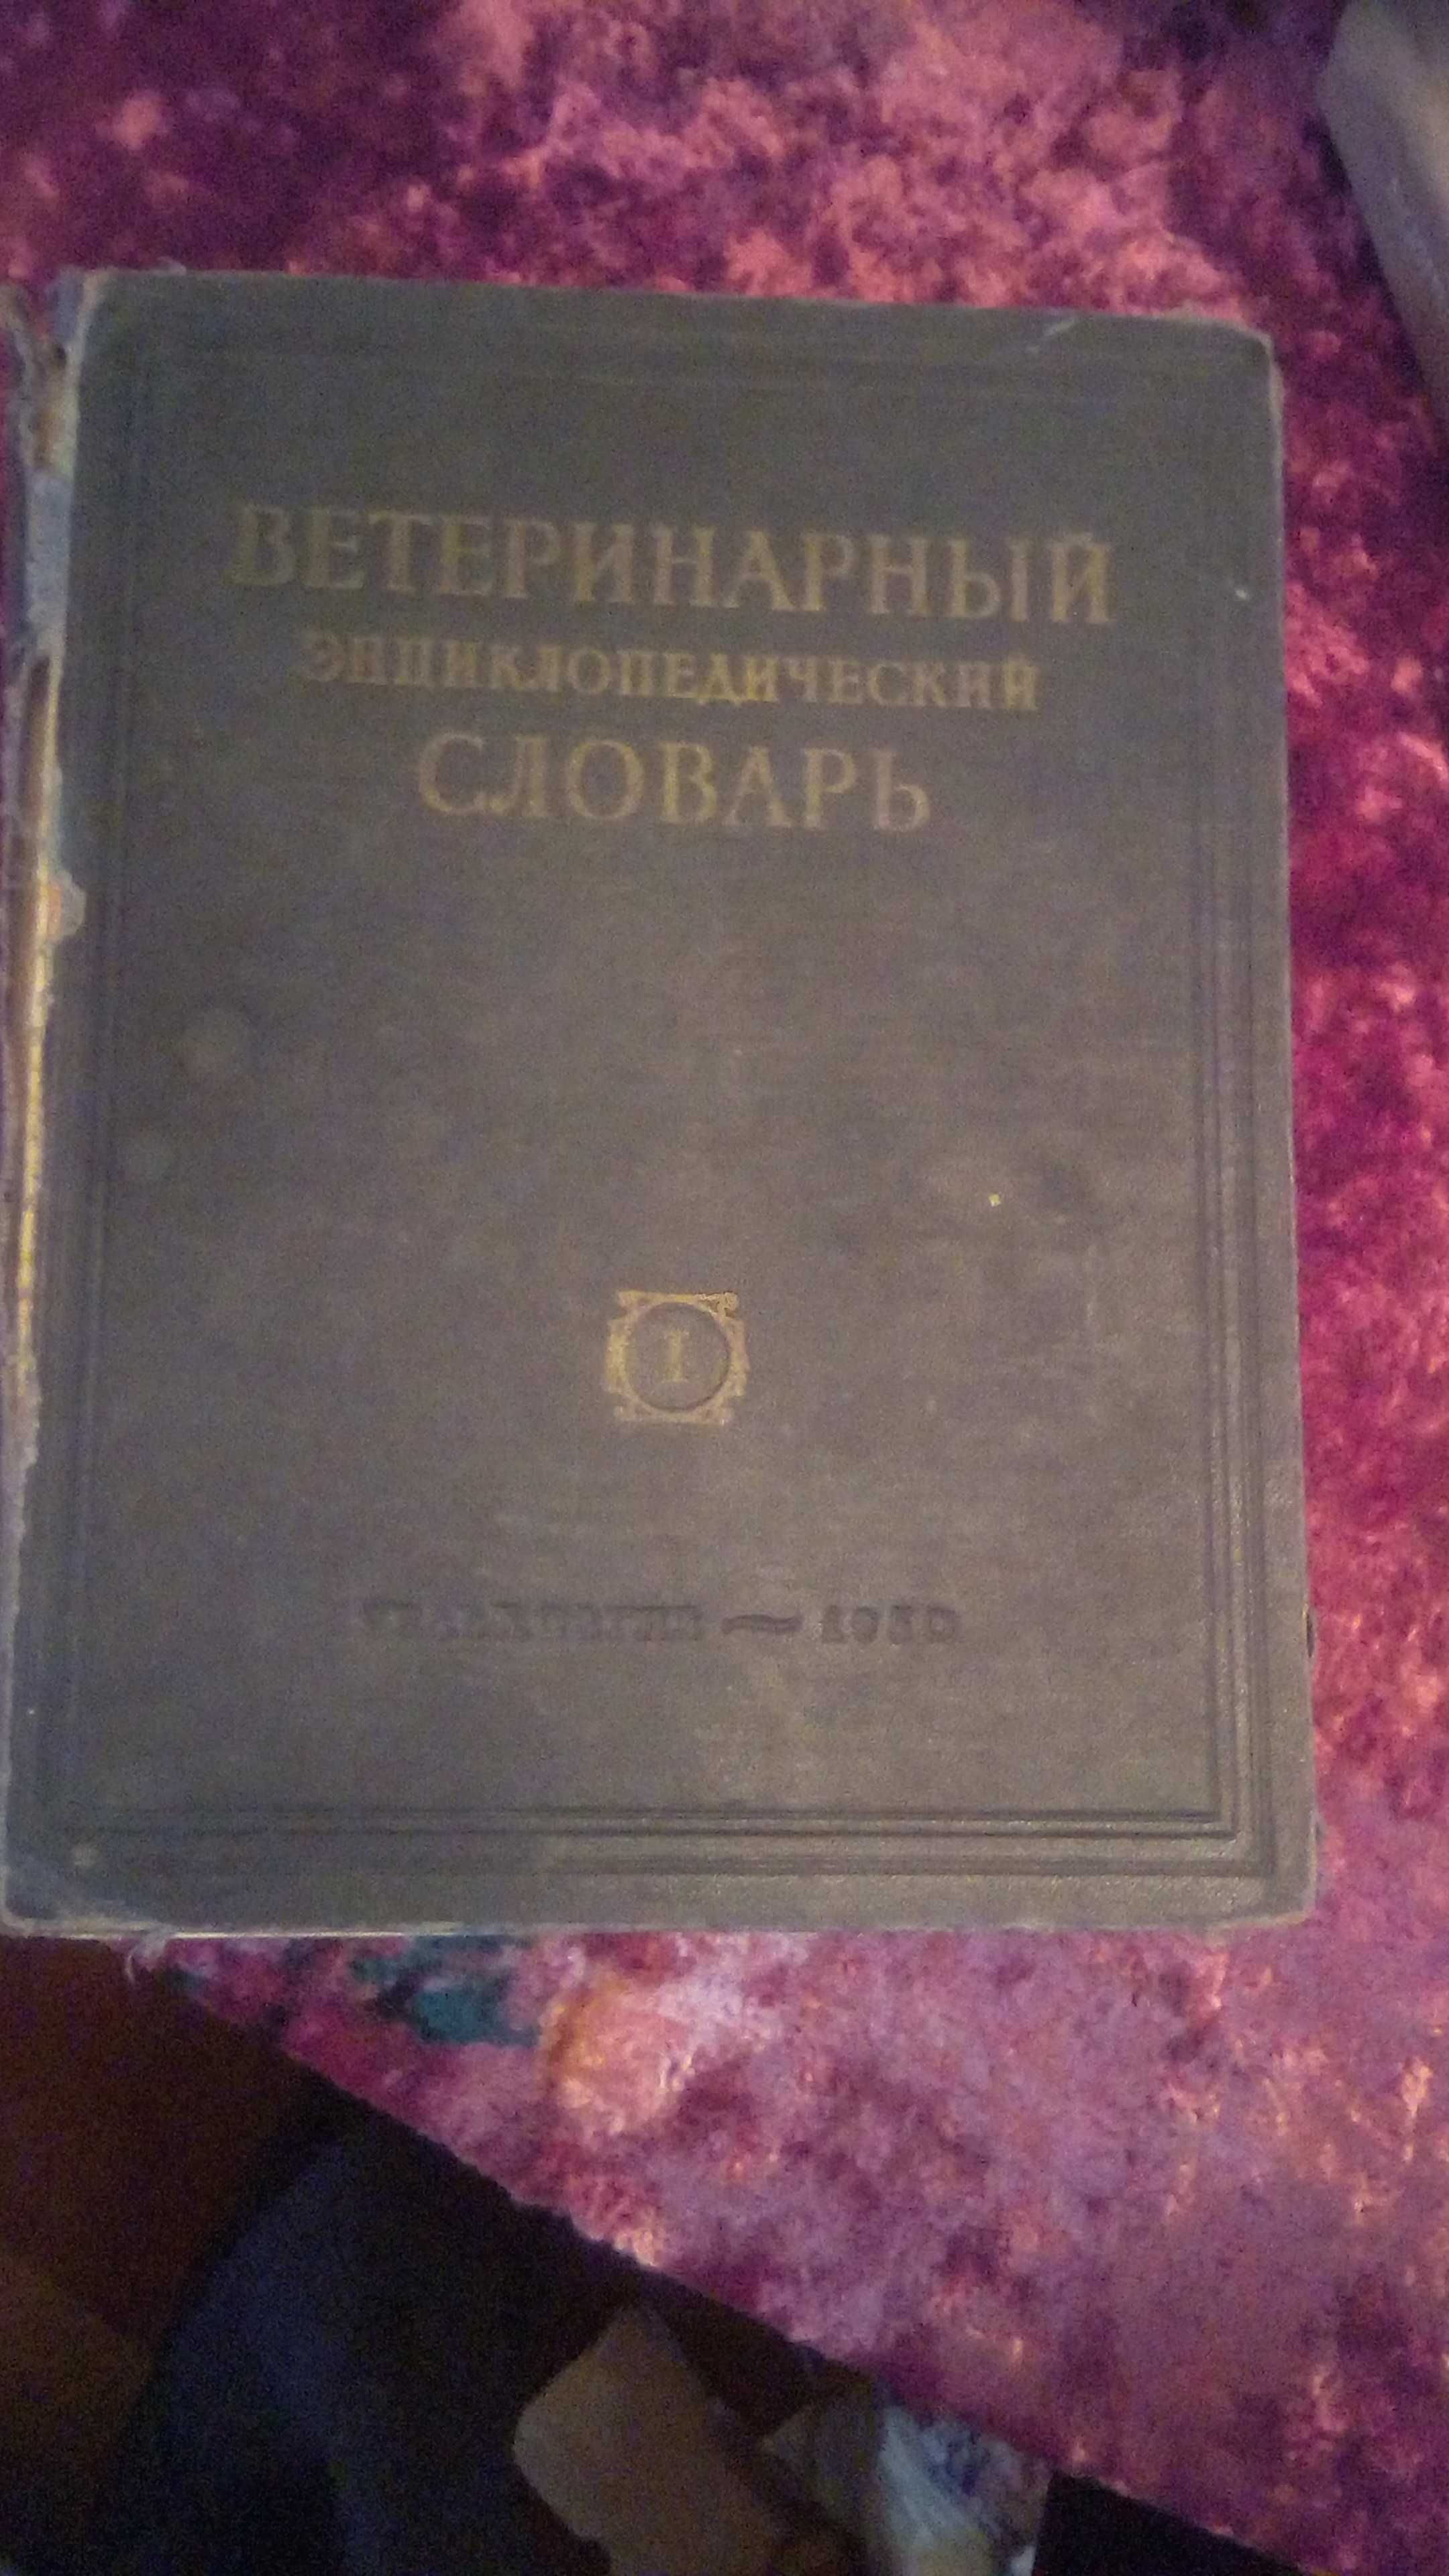 Книга Ветеренарский словарь 1950х годов